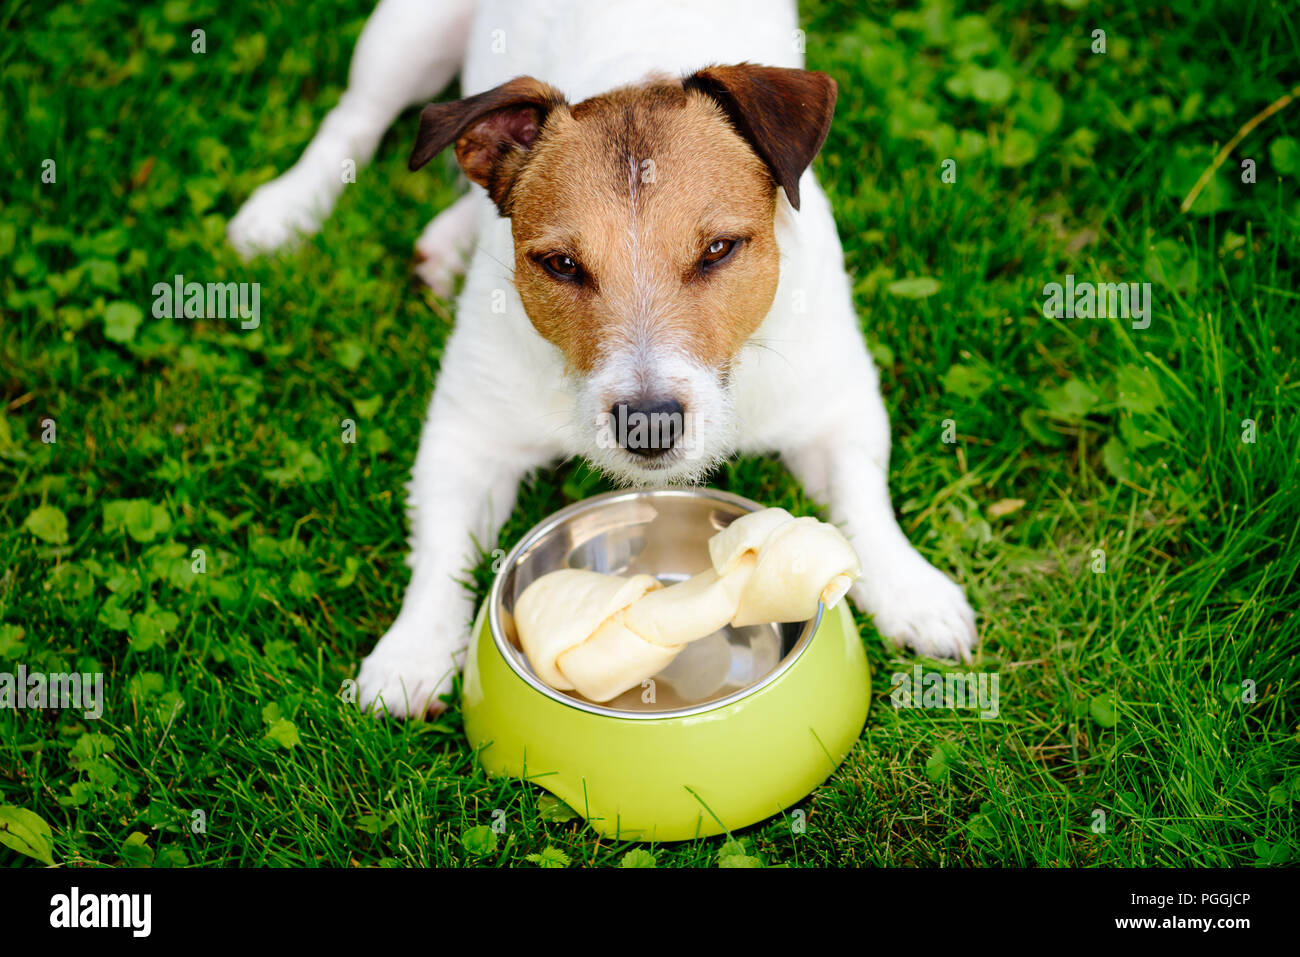 Hund liegend auf Gras wachen rawhide Knochen in doggy Schüssel  Stockfotografie - Alamy